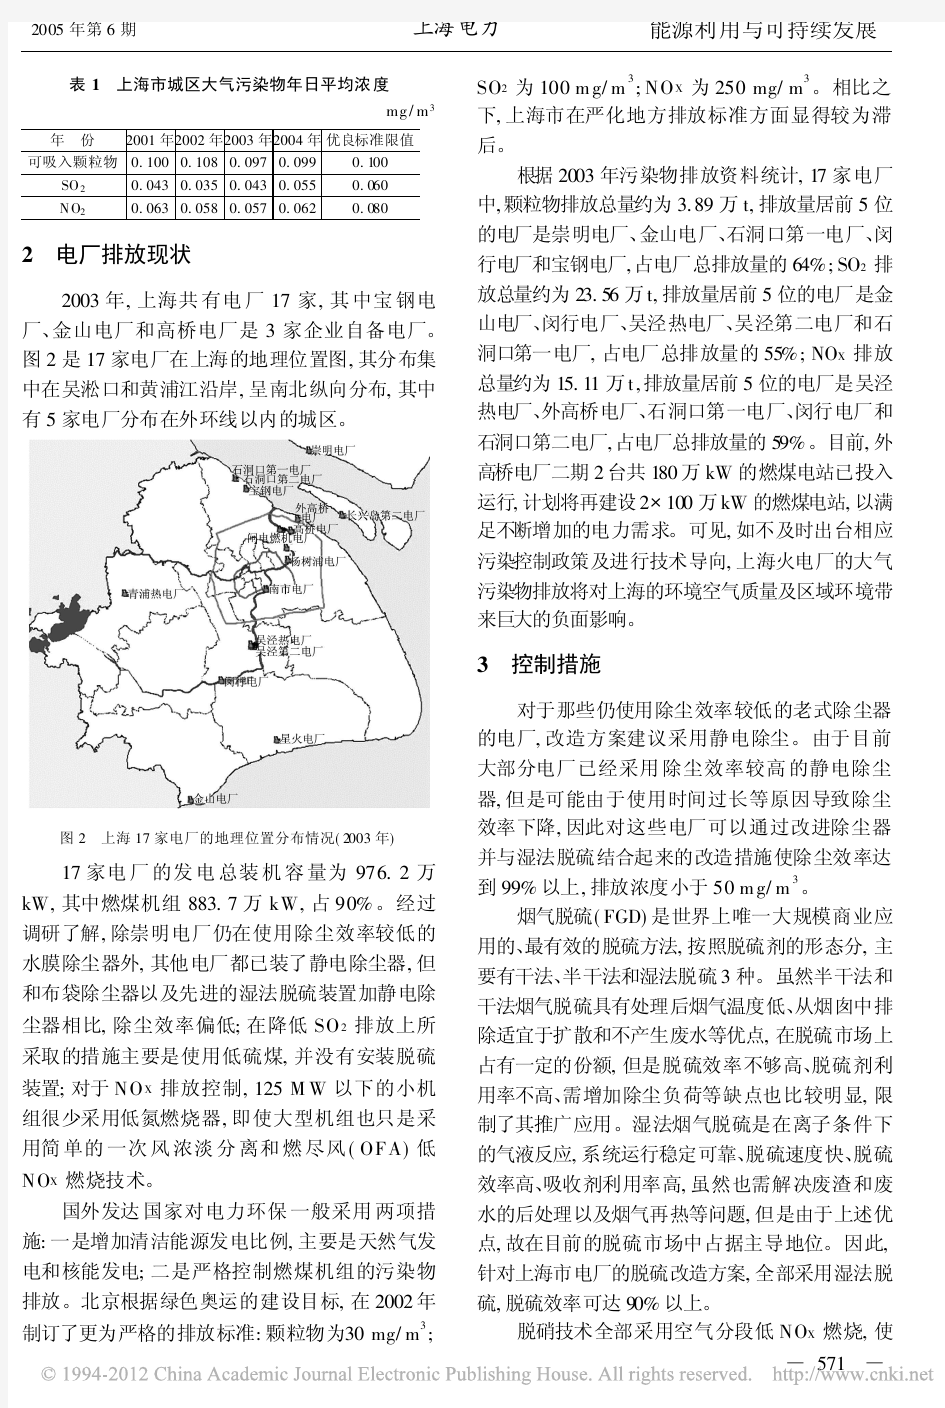 上海市火电厂污染物排放控制及环境影响